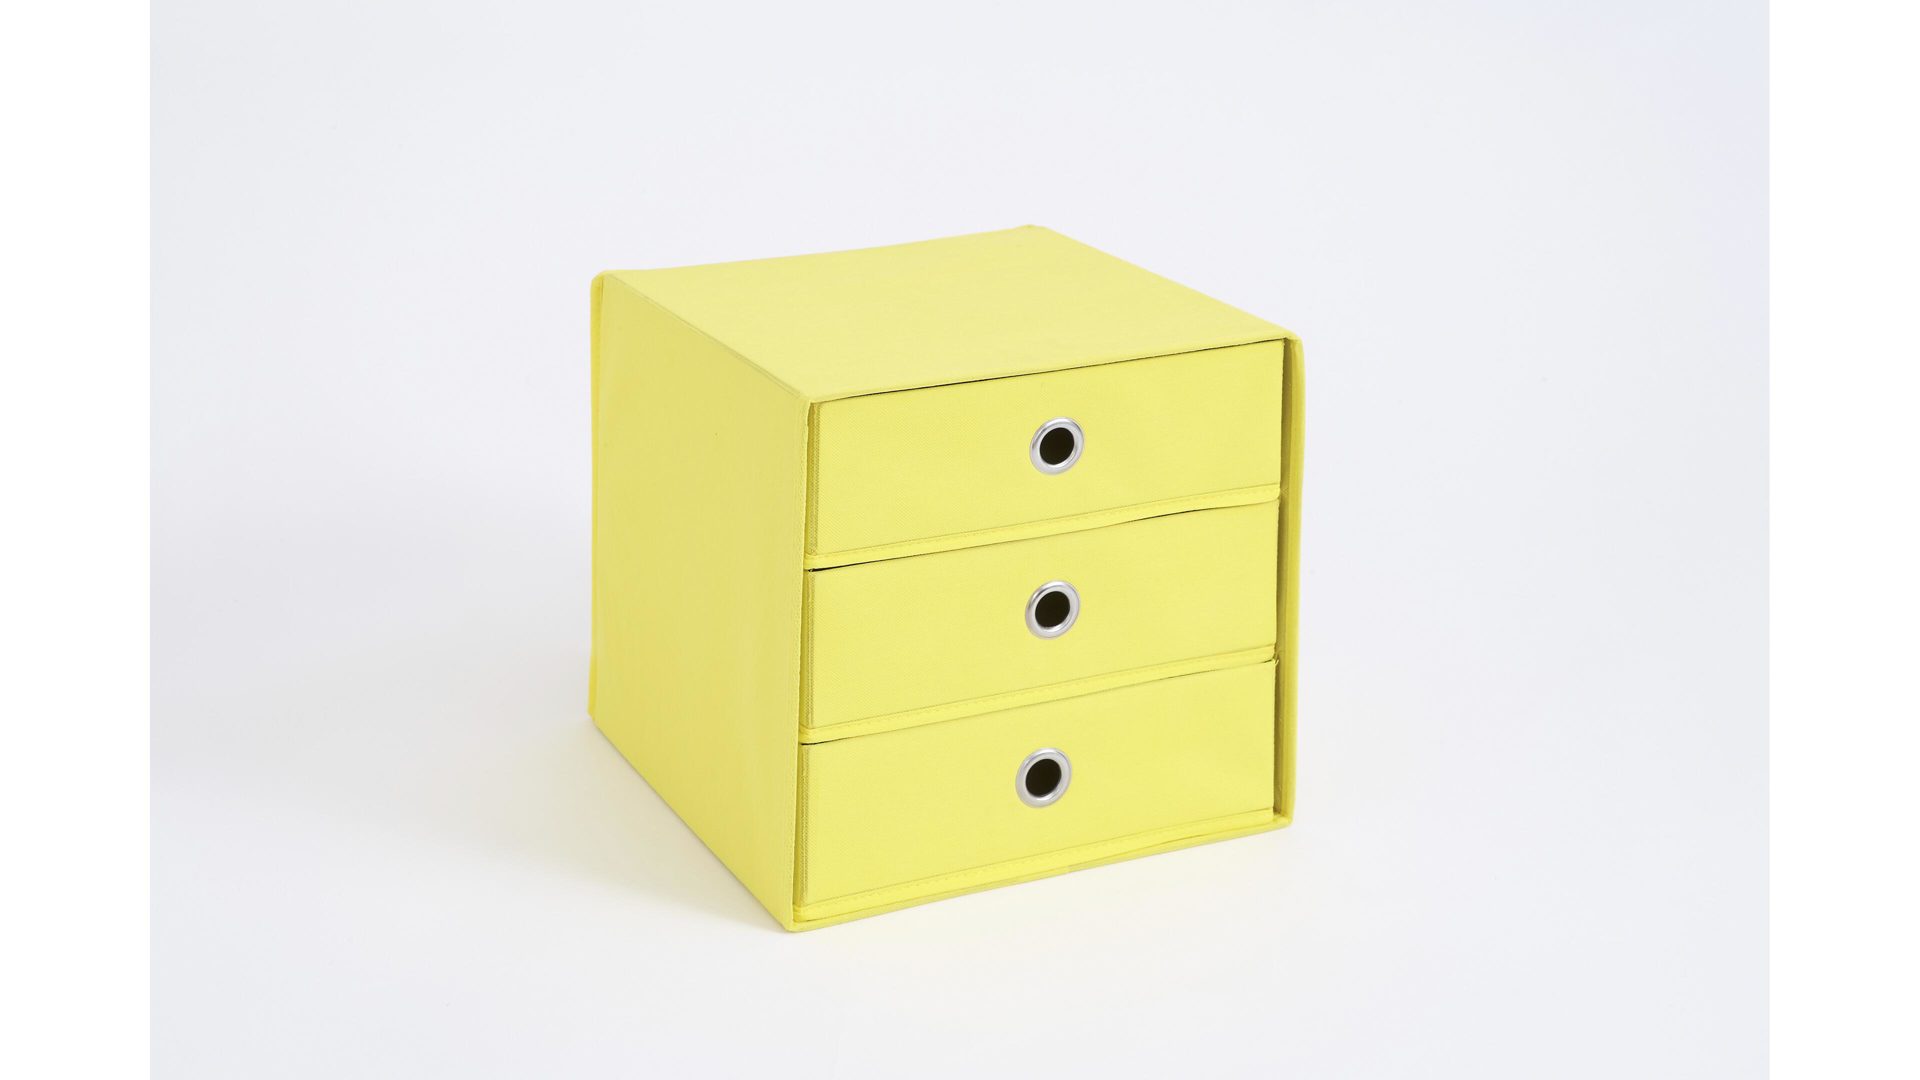 Faltbox Fmd furniture aus Stoff in Gelb Faltbox mit drei Schubladen gelbes, verstärktes Vlies - drei Schubladen, ca. 32 x 32 cm